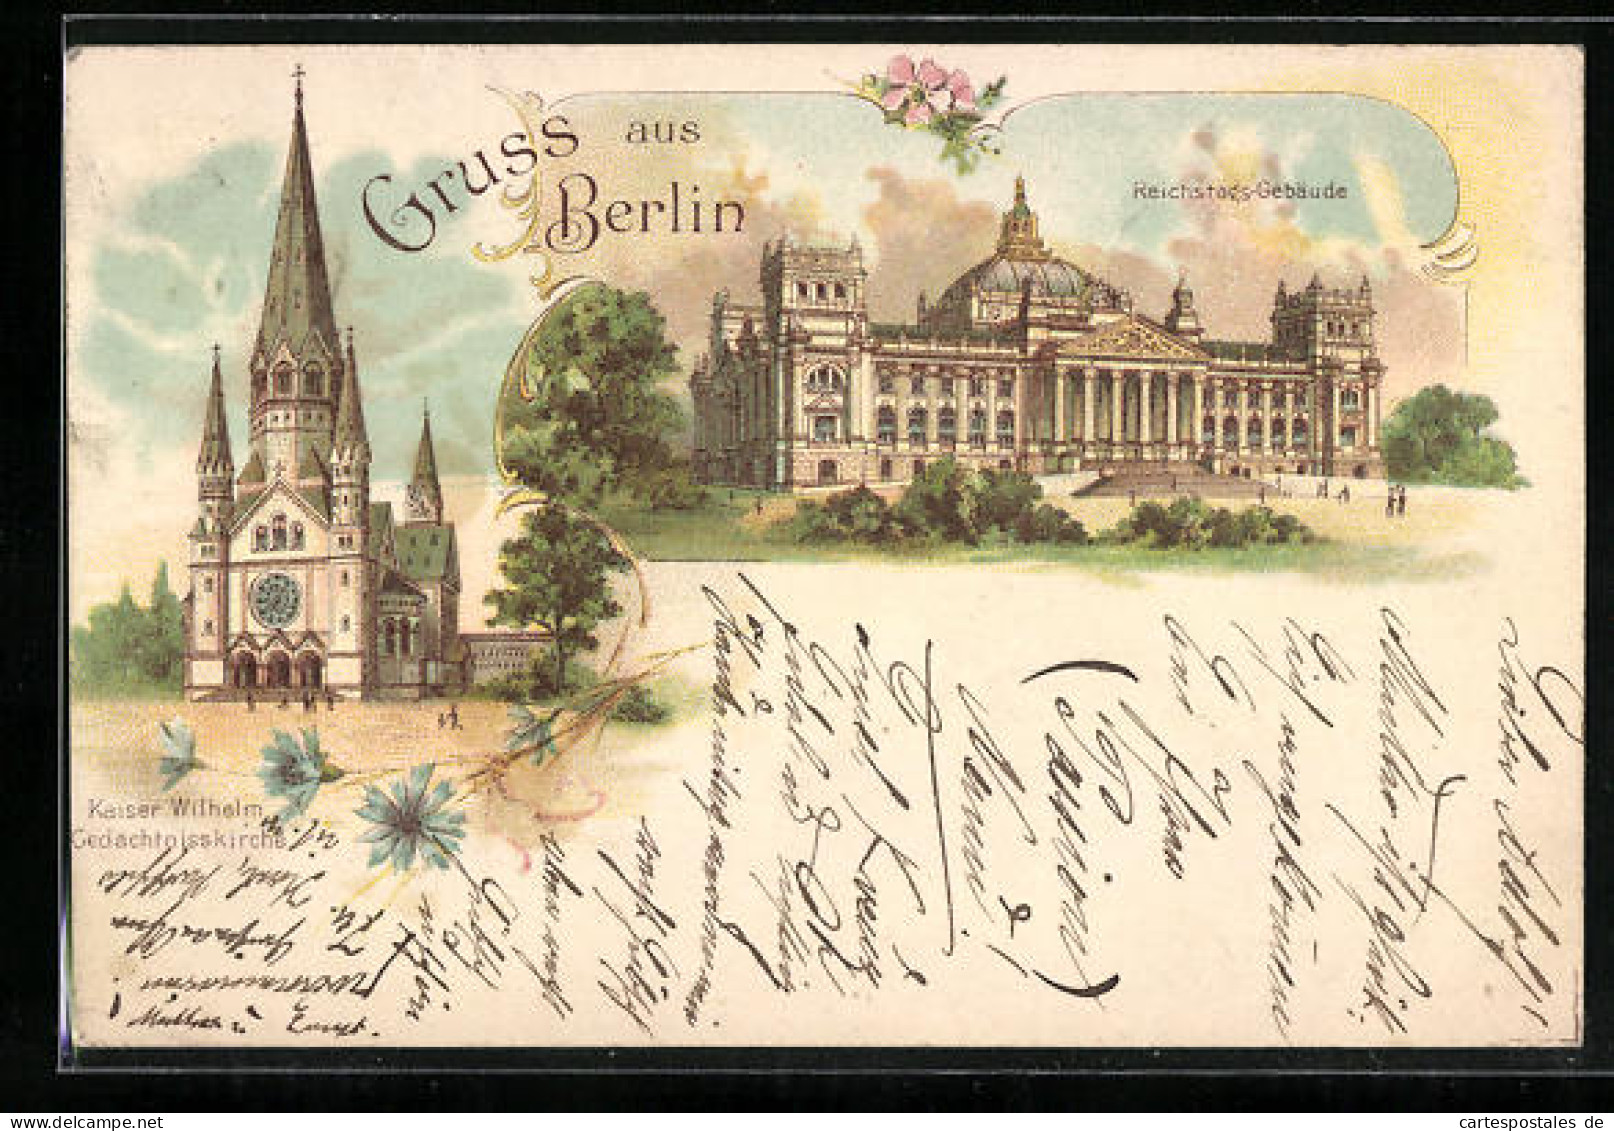 Lithographie Berlin-Tiergarten, Reichstags-Gebäude, Kaiser Wilhelm Gedächtnisskirch  - Dierentuin